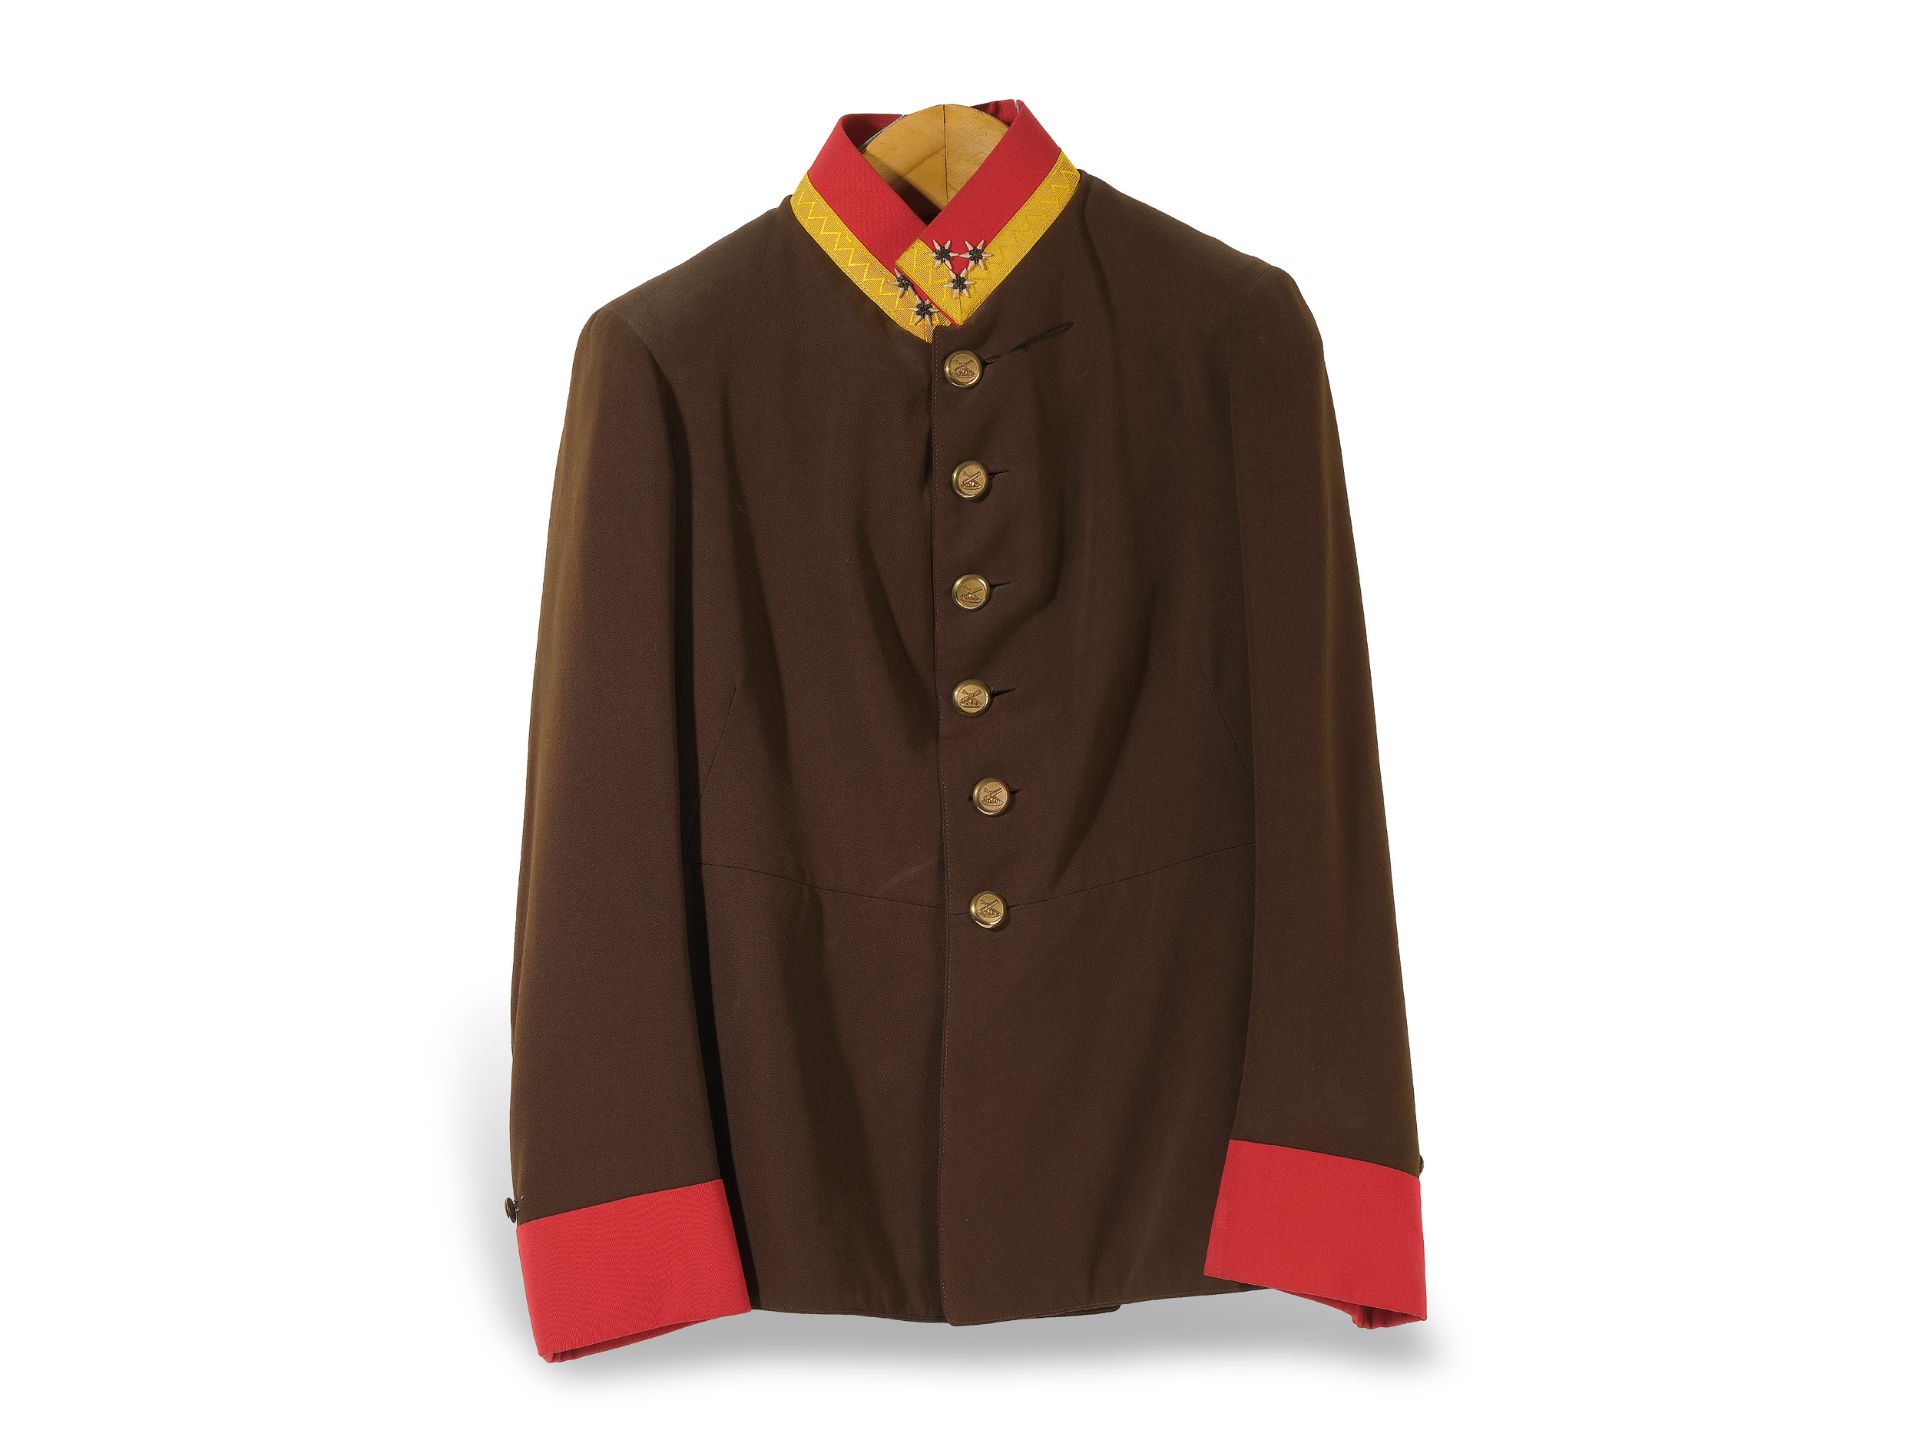 Artillery uniform jacket?, 
K. u. k. Monarchy, 
Ca. 1900/10